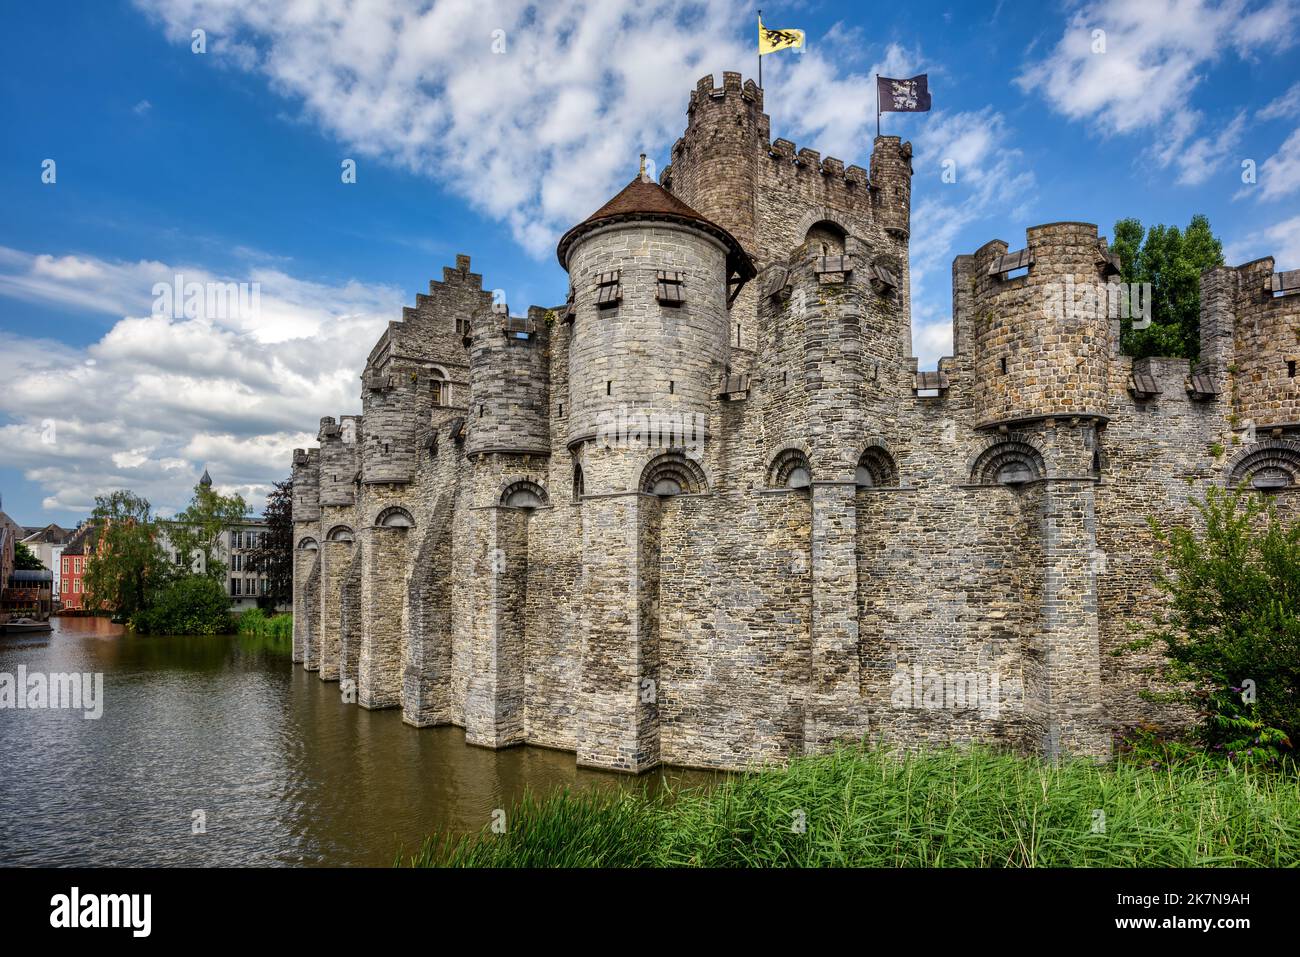 Il castello medievale di Gravensteen, uno dei principali monumenti storici della città di Gand, Belgiumm circondato dal fossato pieno d'acqua Foto Stock